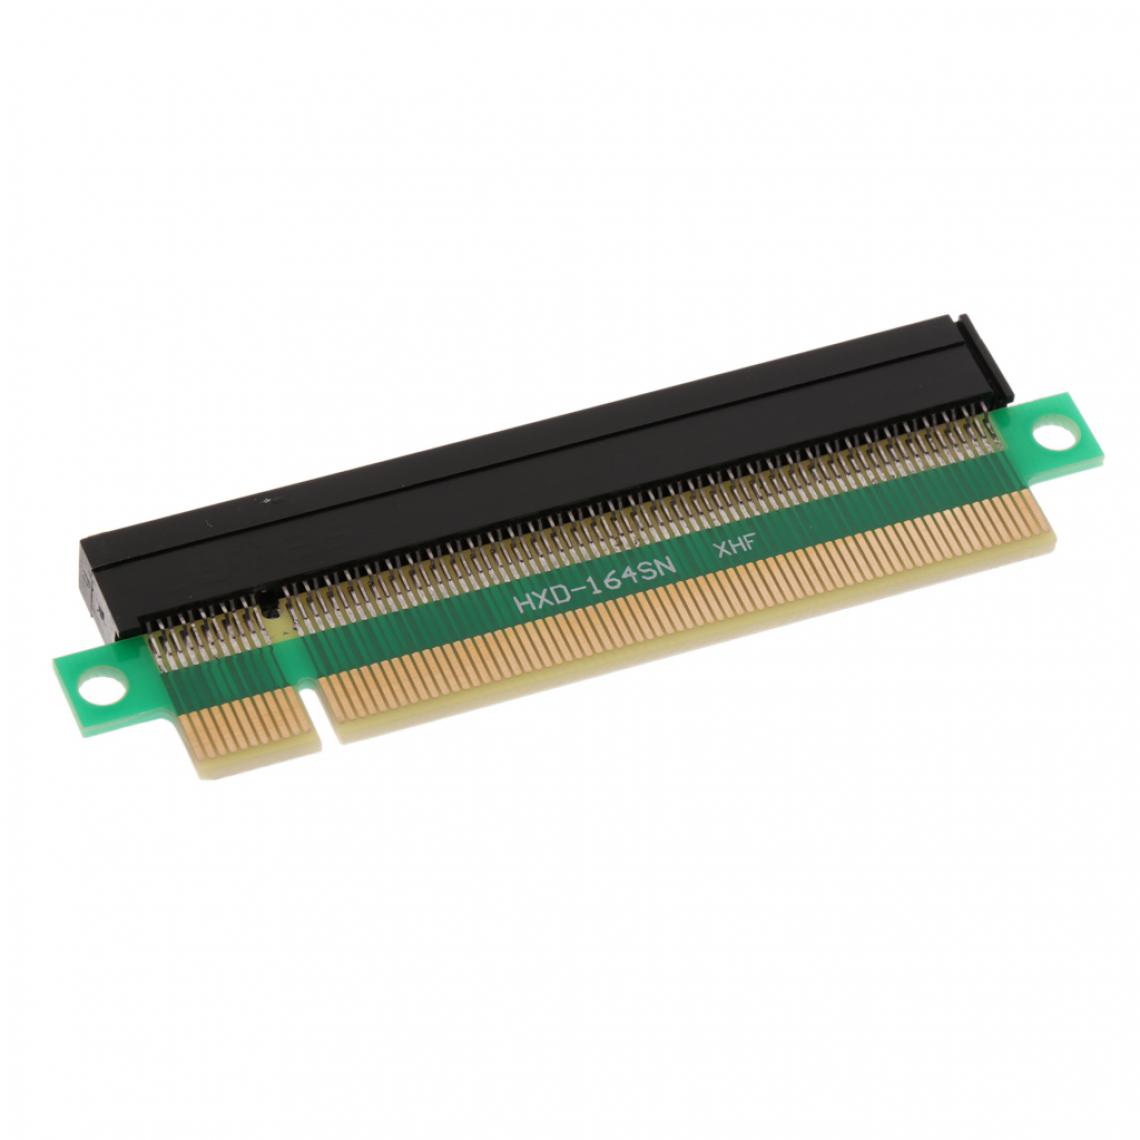 marque generique - PCI-E 16x Slot Mâle Vers Femelle PCI- Carte Vidéo Protecteur Riser Card - Câble antenne